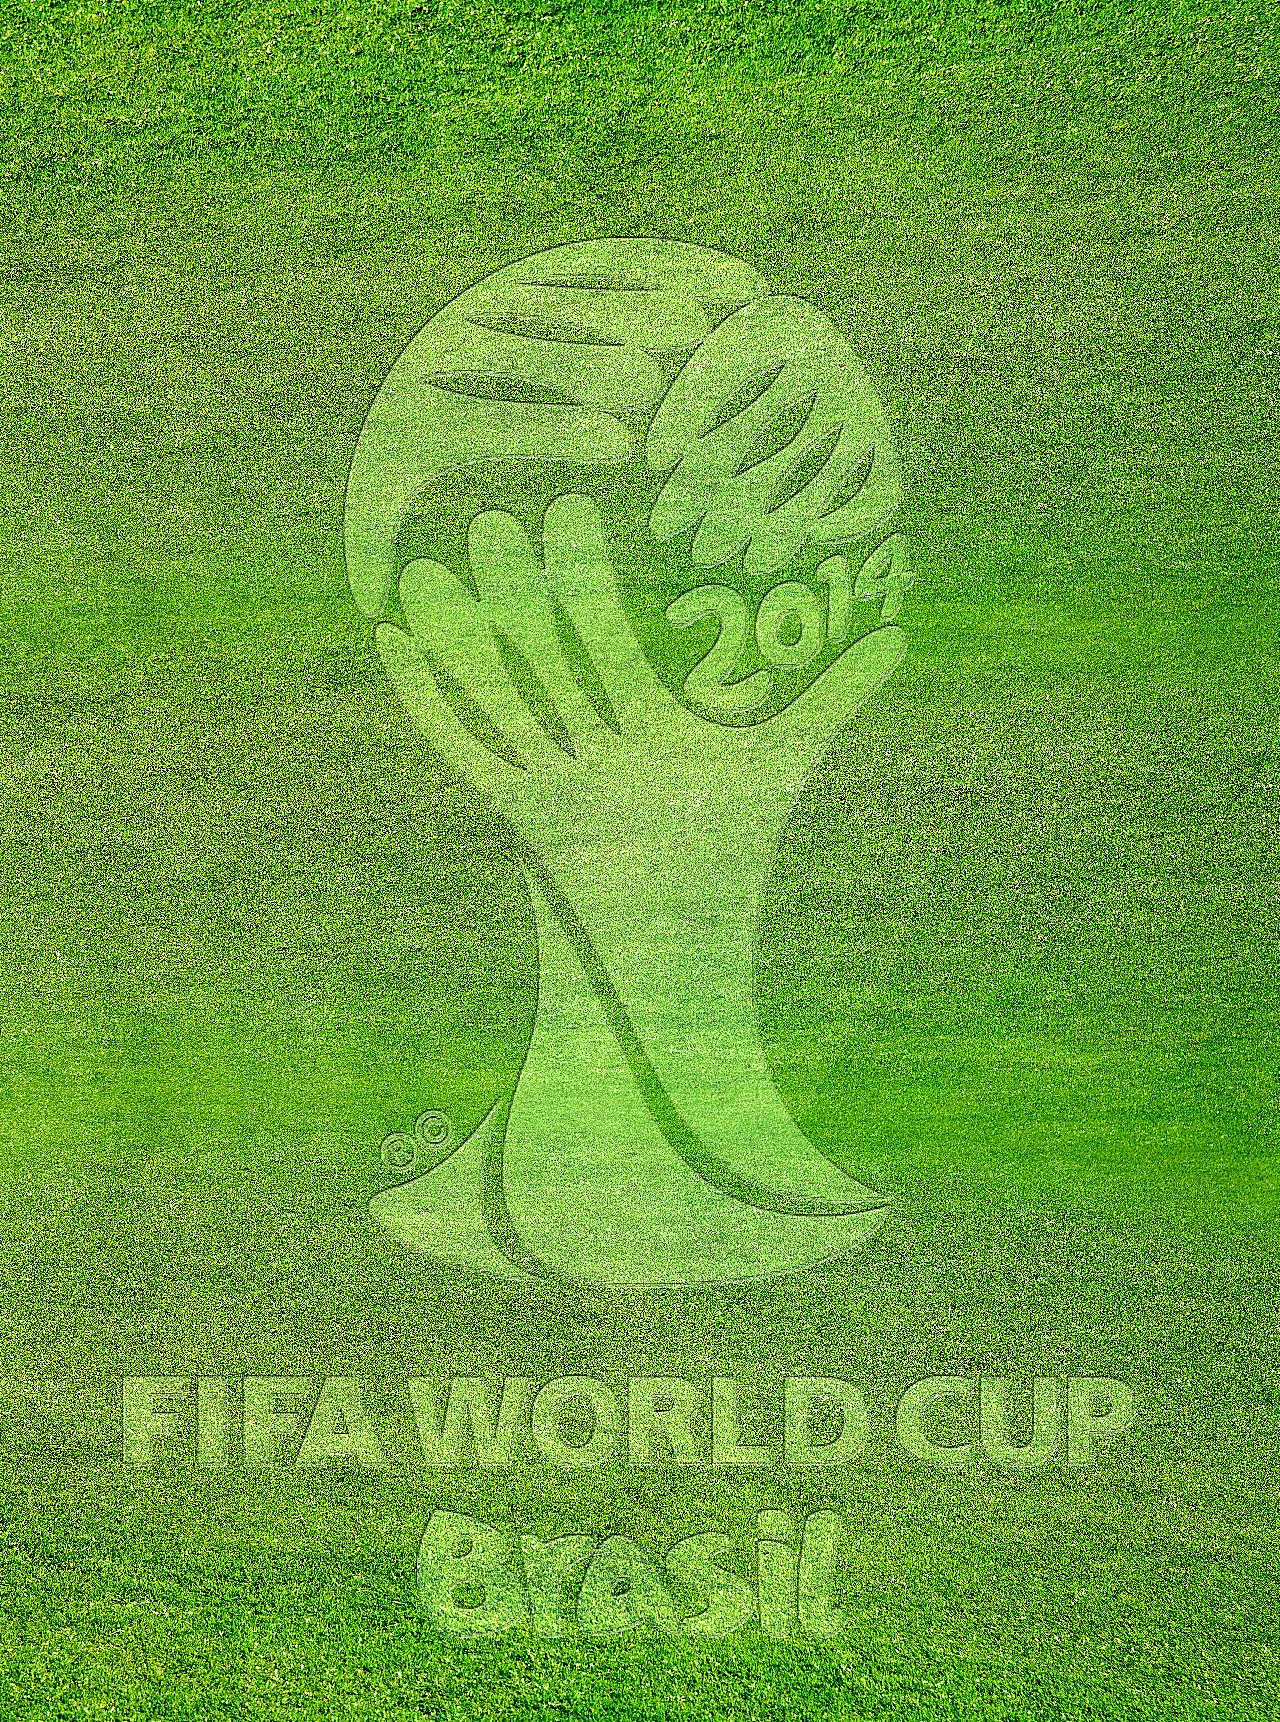 2014巴西世界杯标志图片高清摄影